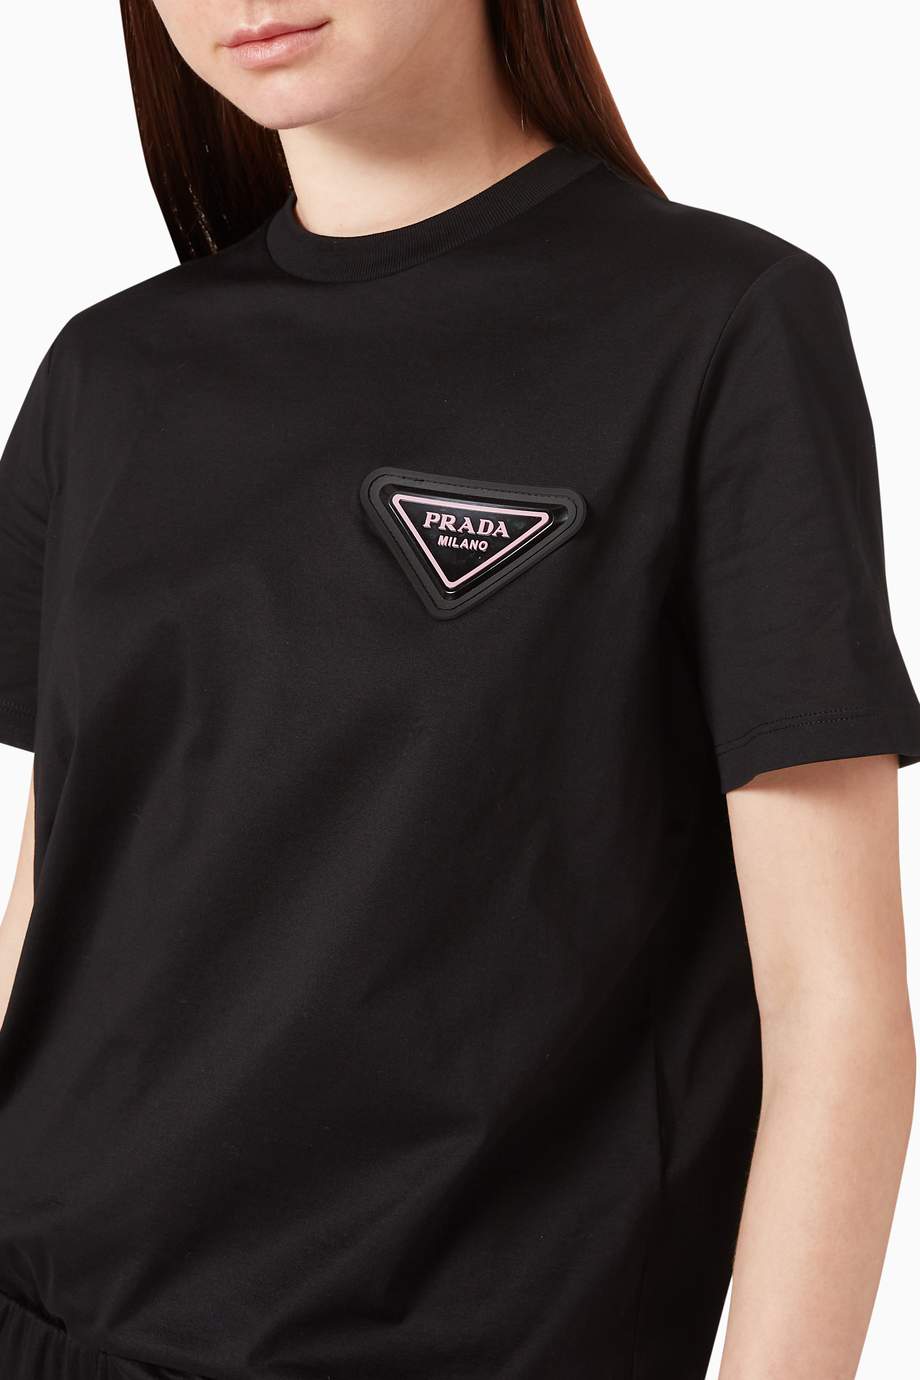 Shop Prada Black Triangle Logo Cotton T-Shirt for Women | Ounass UAE